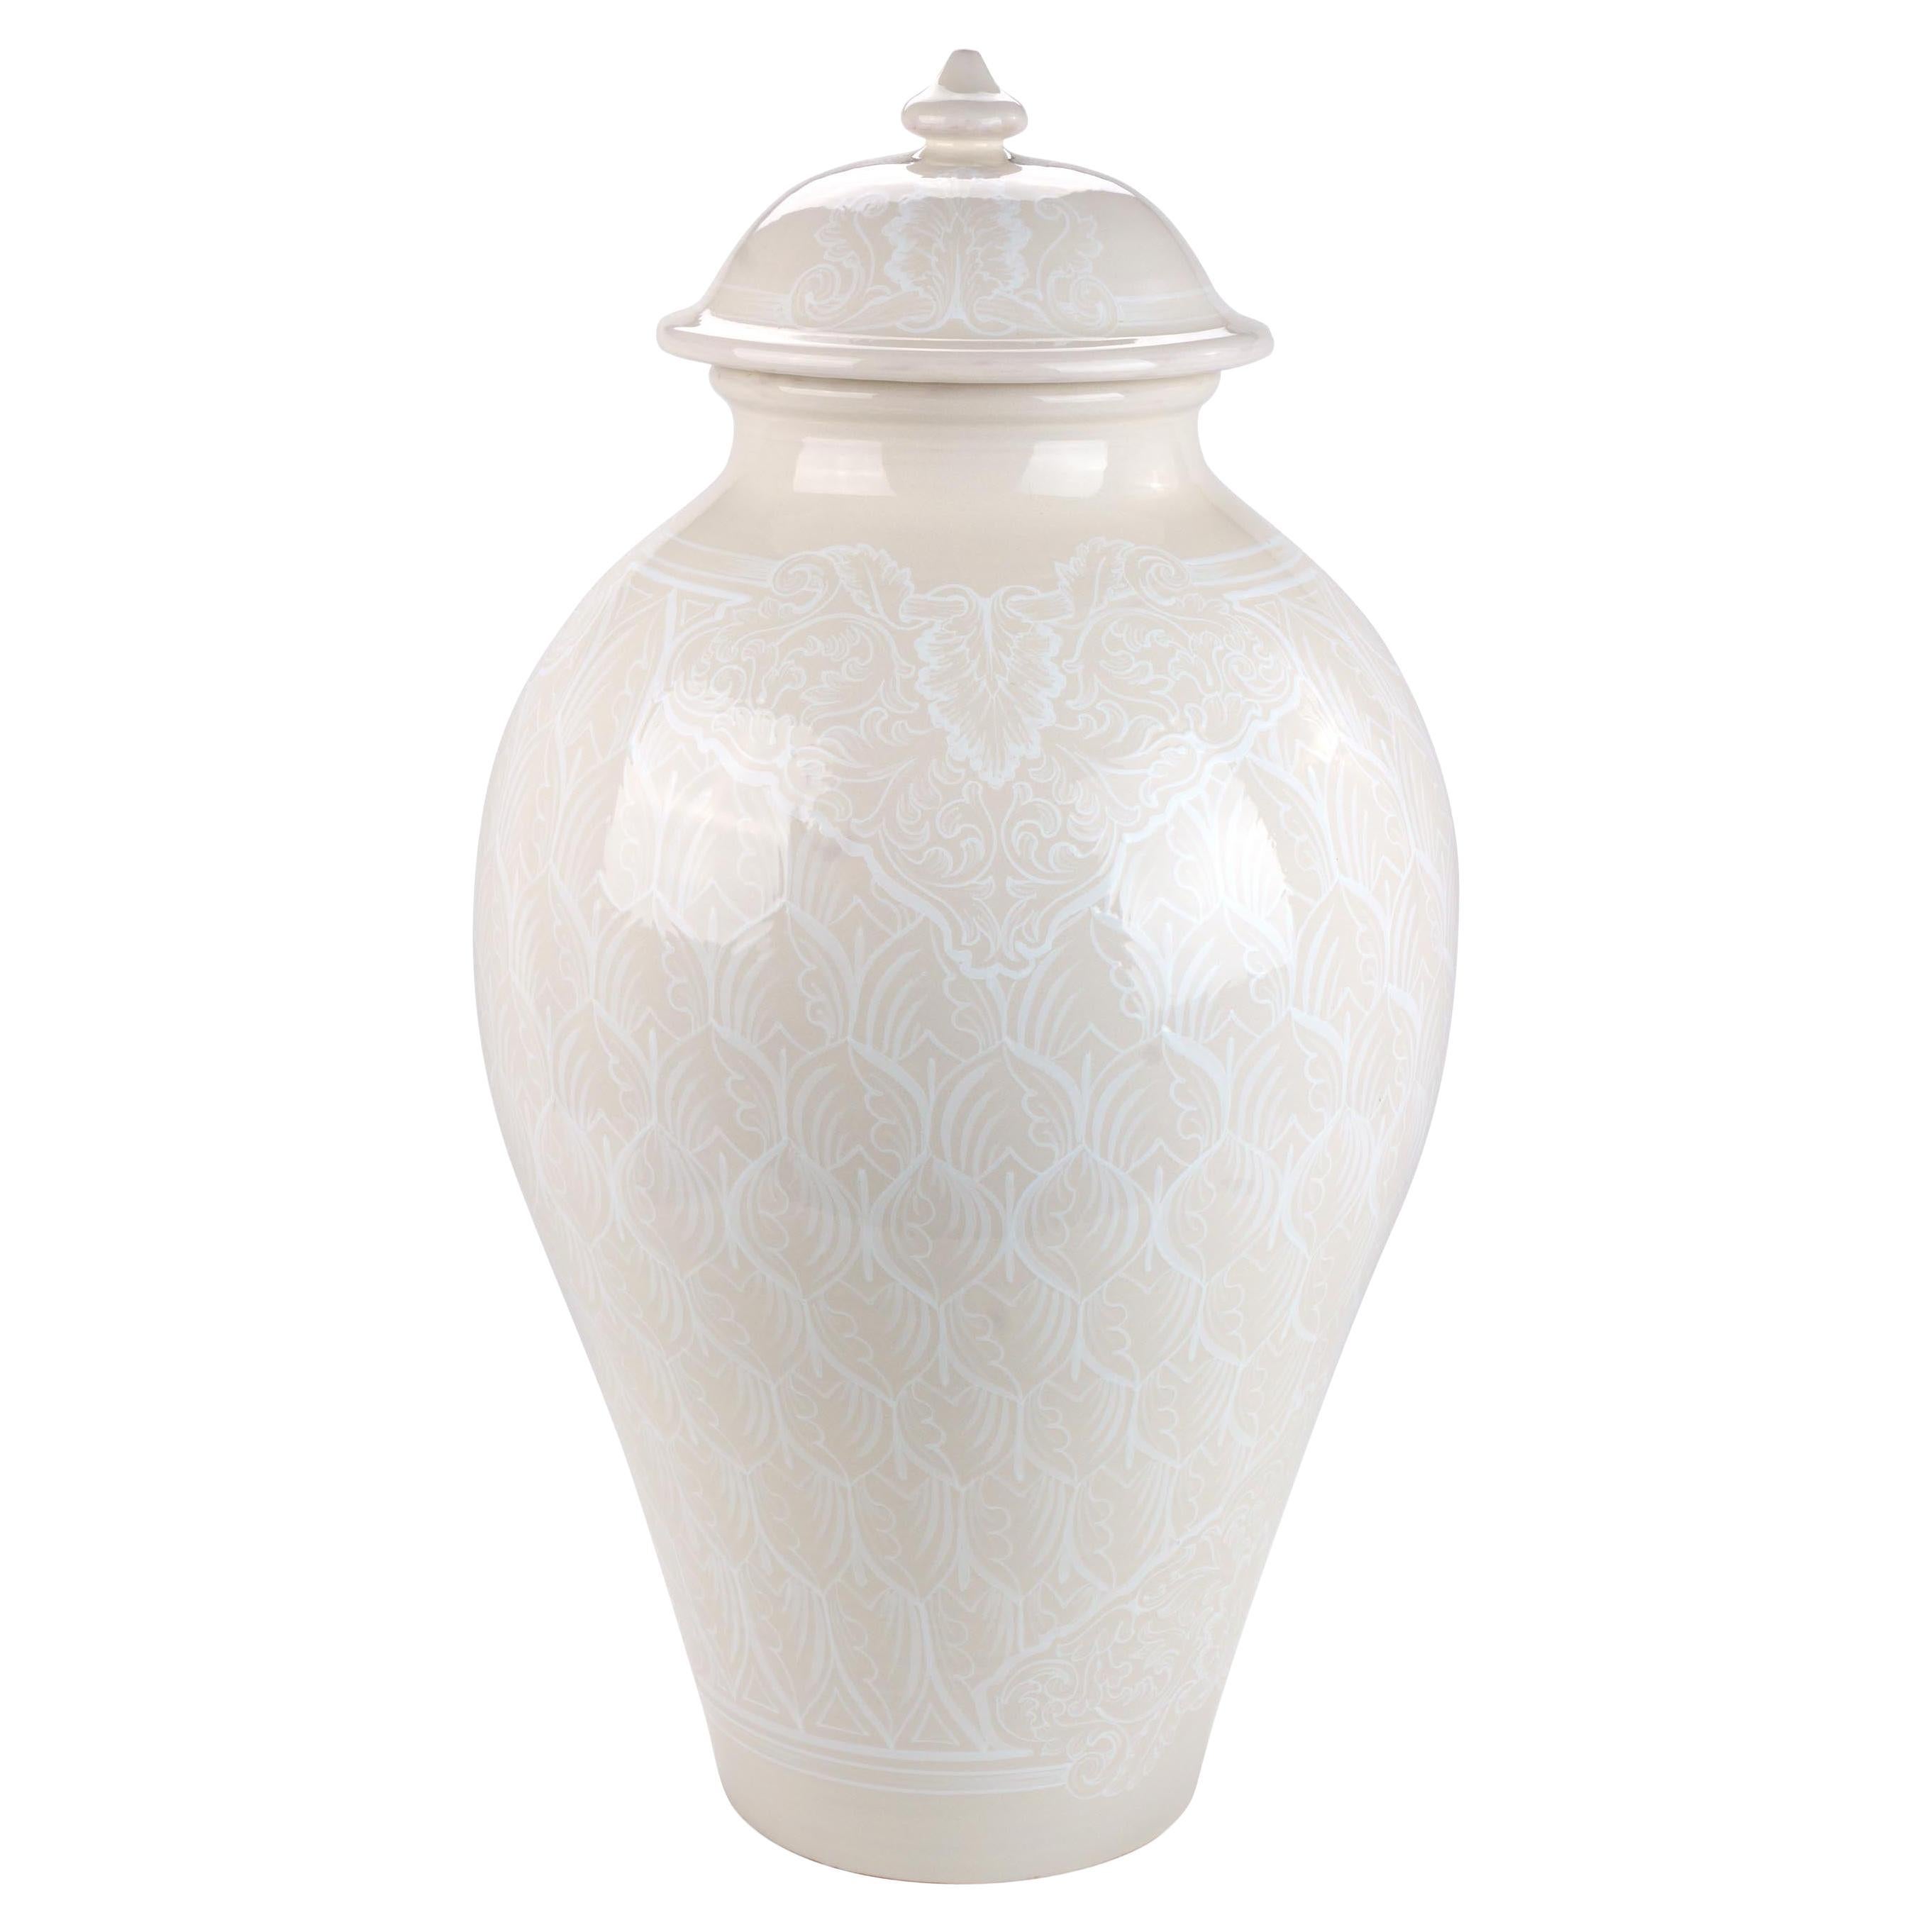 Vase Potiche Jar Lid Decorated Ornament Decorative Majolica Total White Vessel